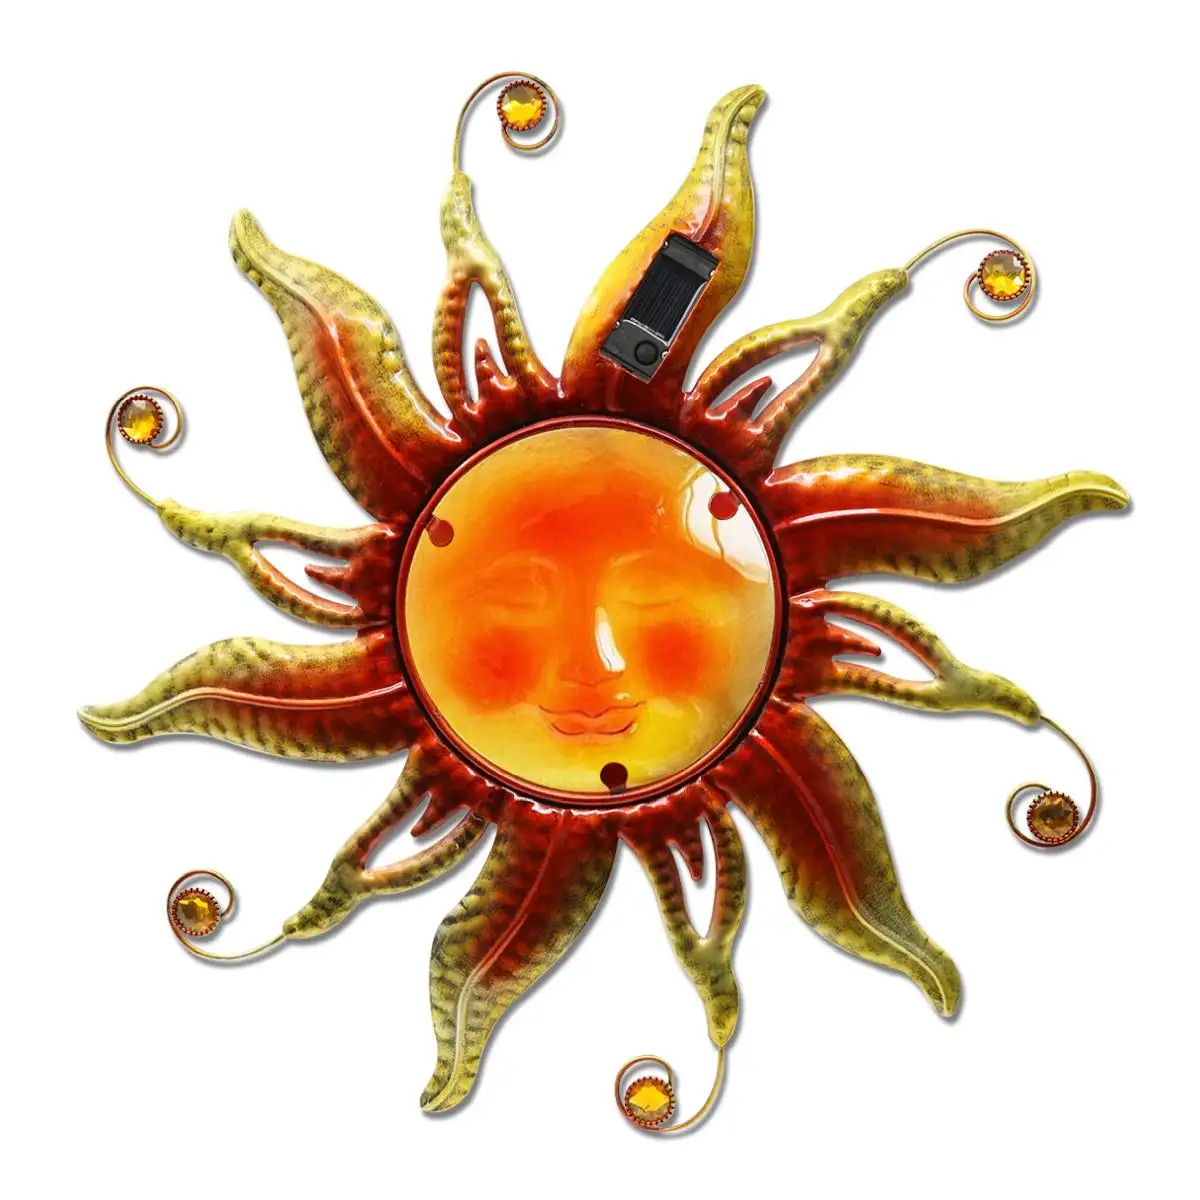 18 بوصة لوحة جدارية لوجه الشمس تعمل بالطاقة الشمسية - تمثال معدني لشمس بضوء ليد ووجه مبتسم، ديكورات للتعليق على الحائط في الهواء الطلق